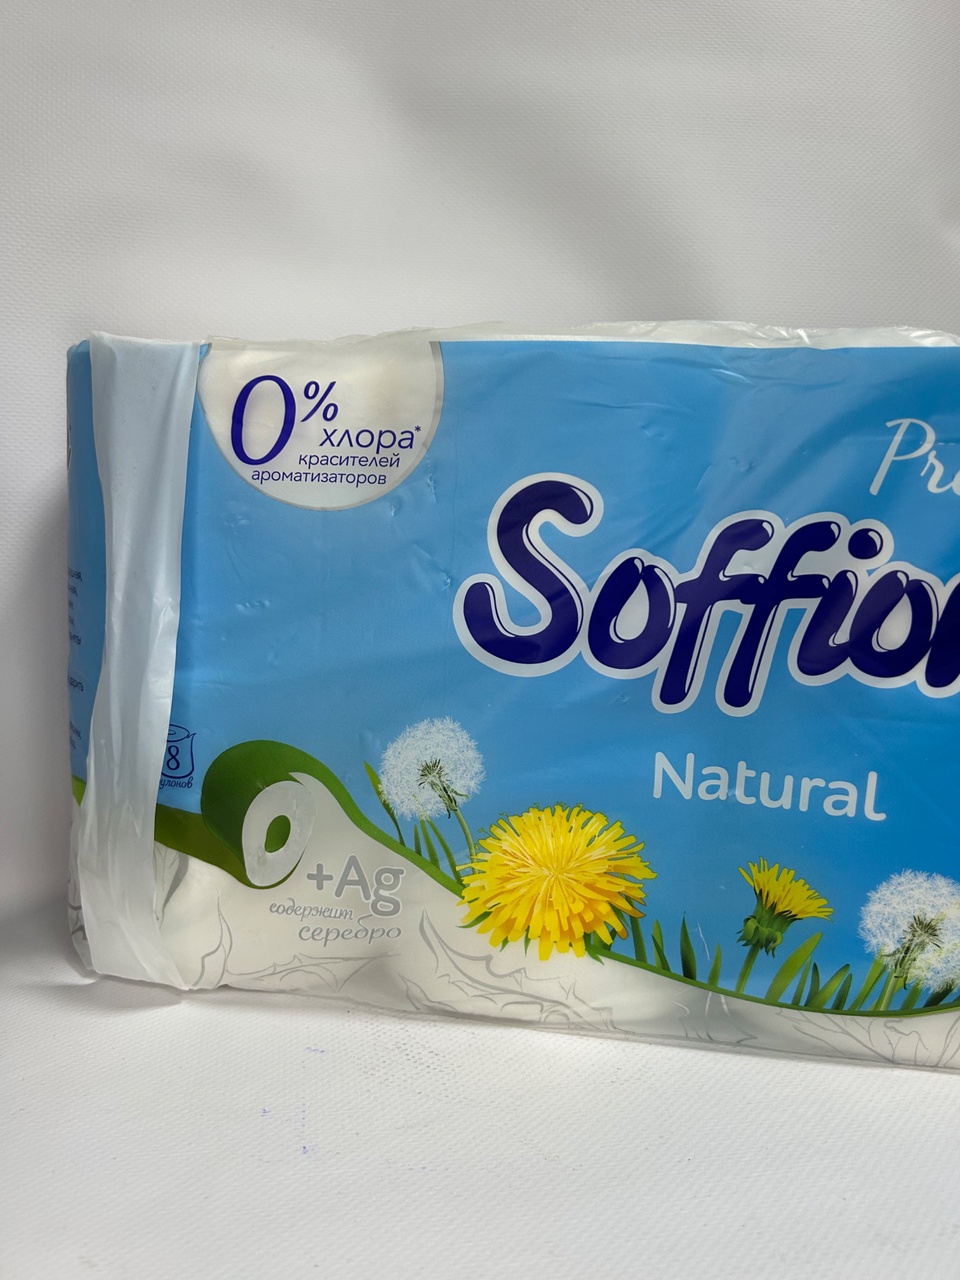 Туалетная бумага Soffione «Натурель» 8шт - 200 ₽, заказать онлайн.